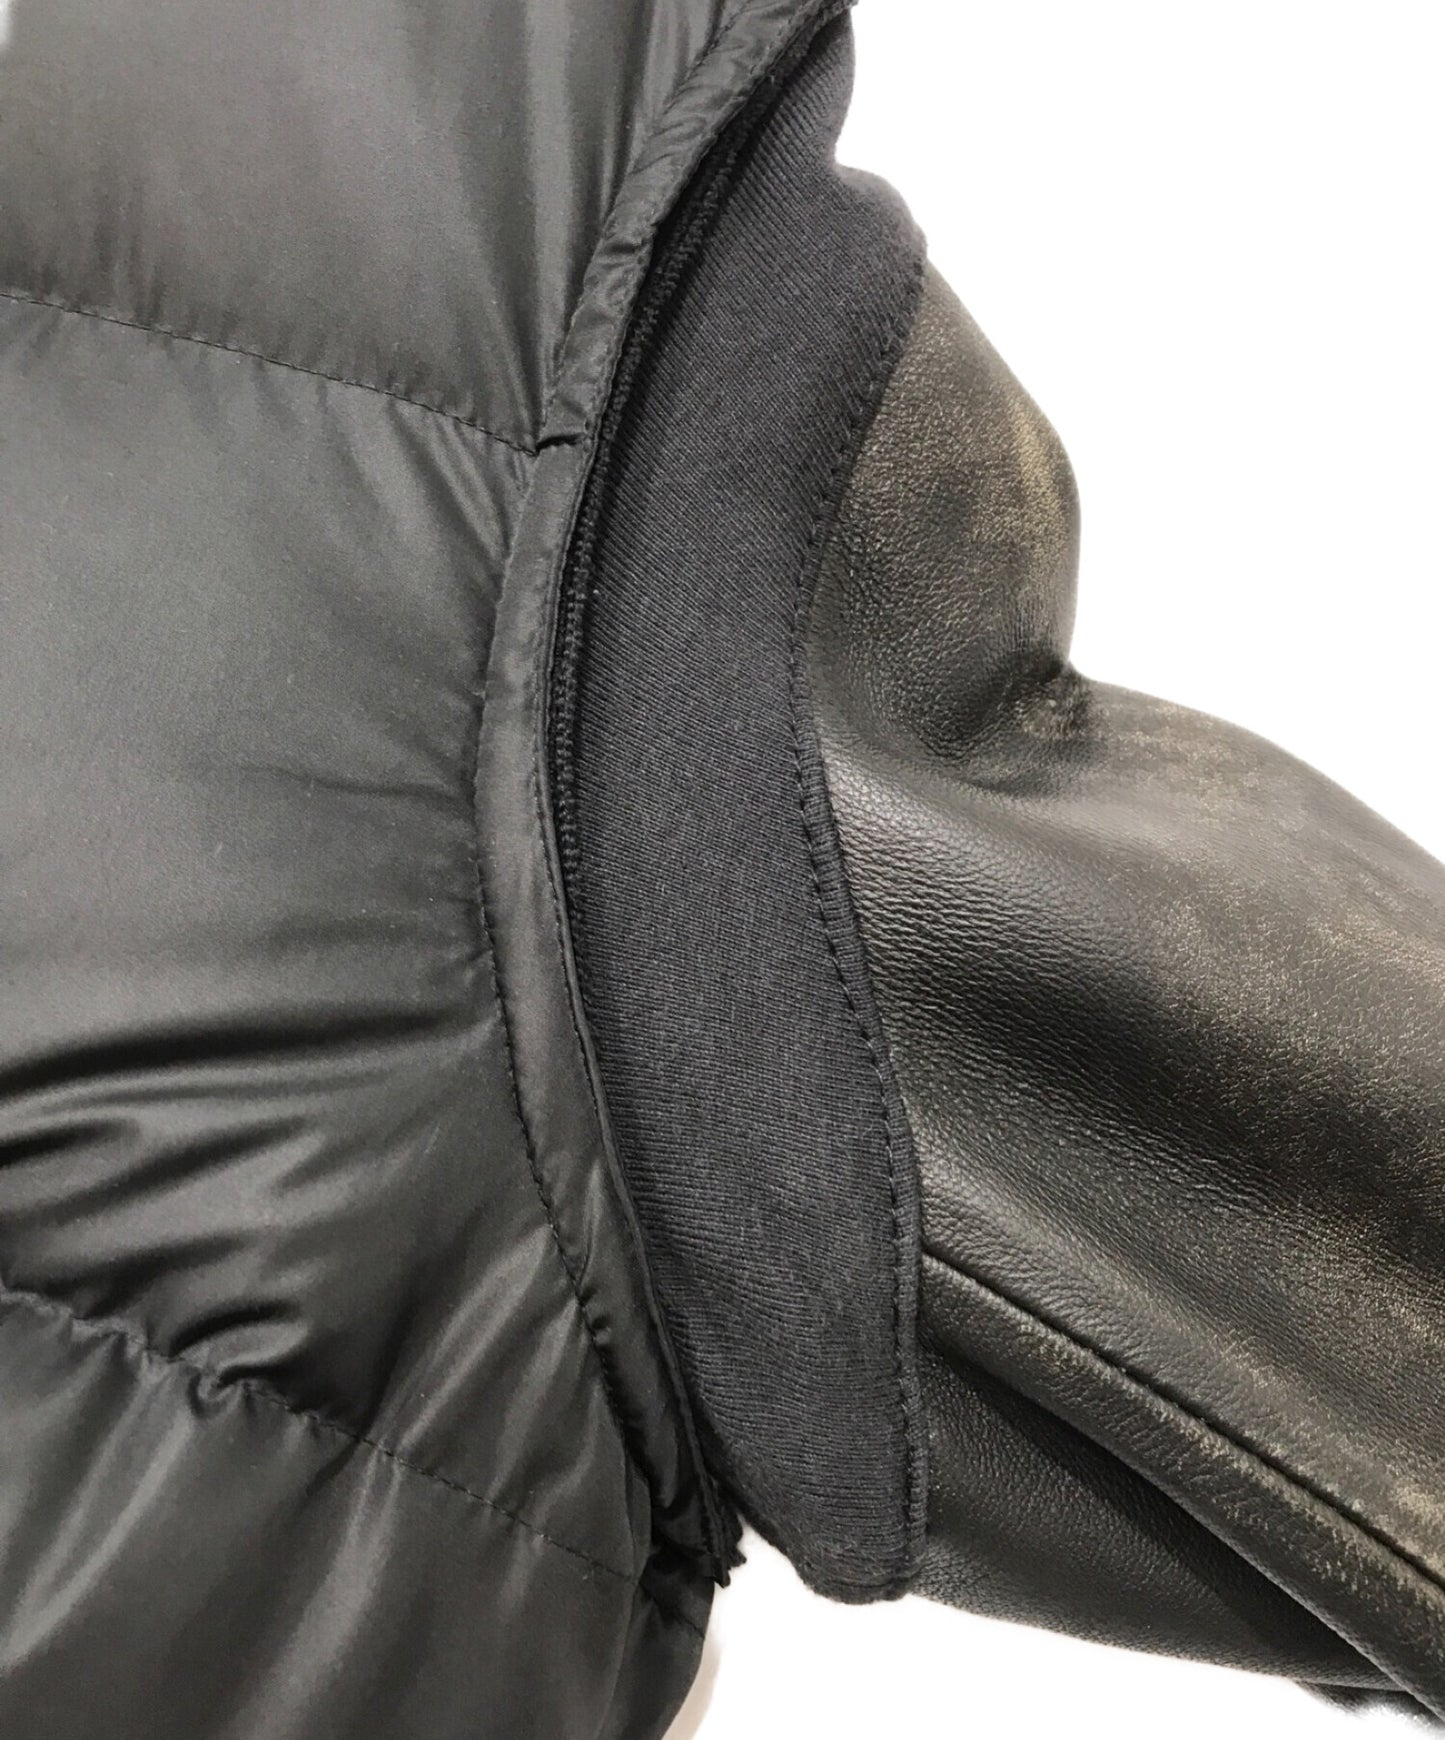 卧底袖子皮革下夹克25周年限量版UCP9202-2